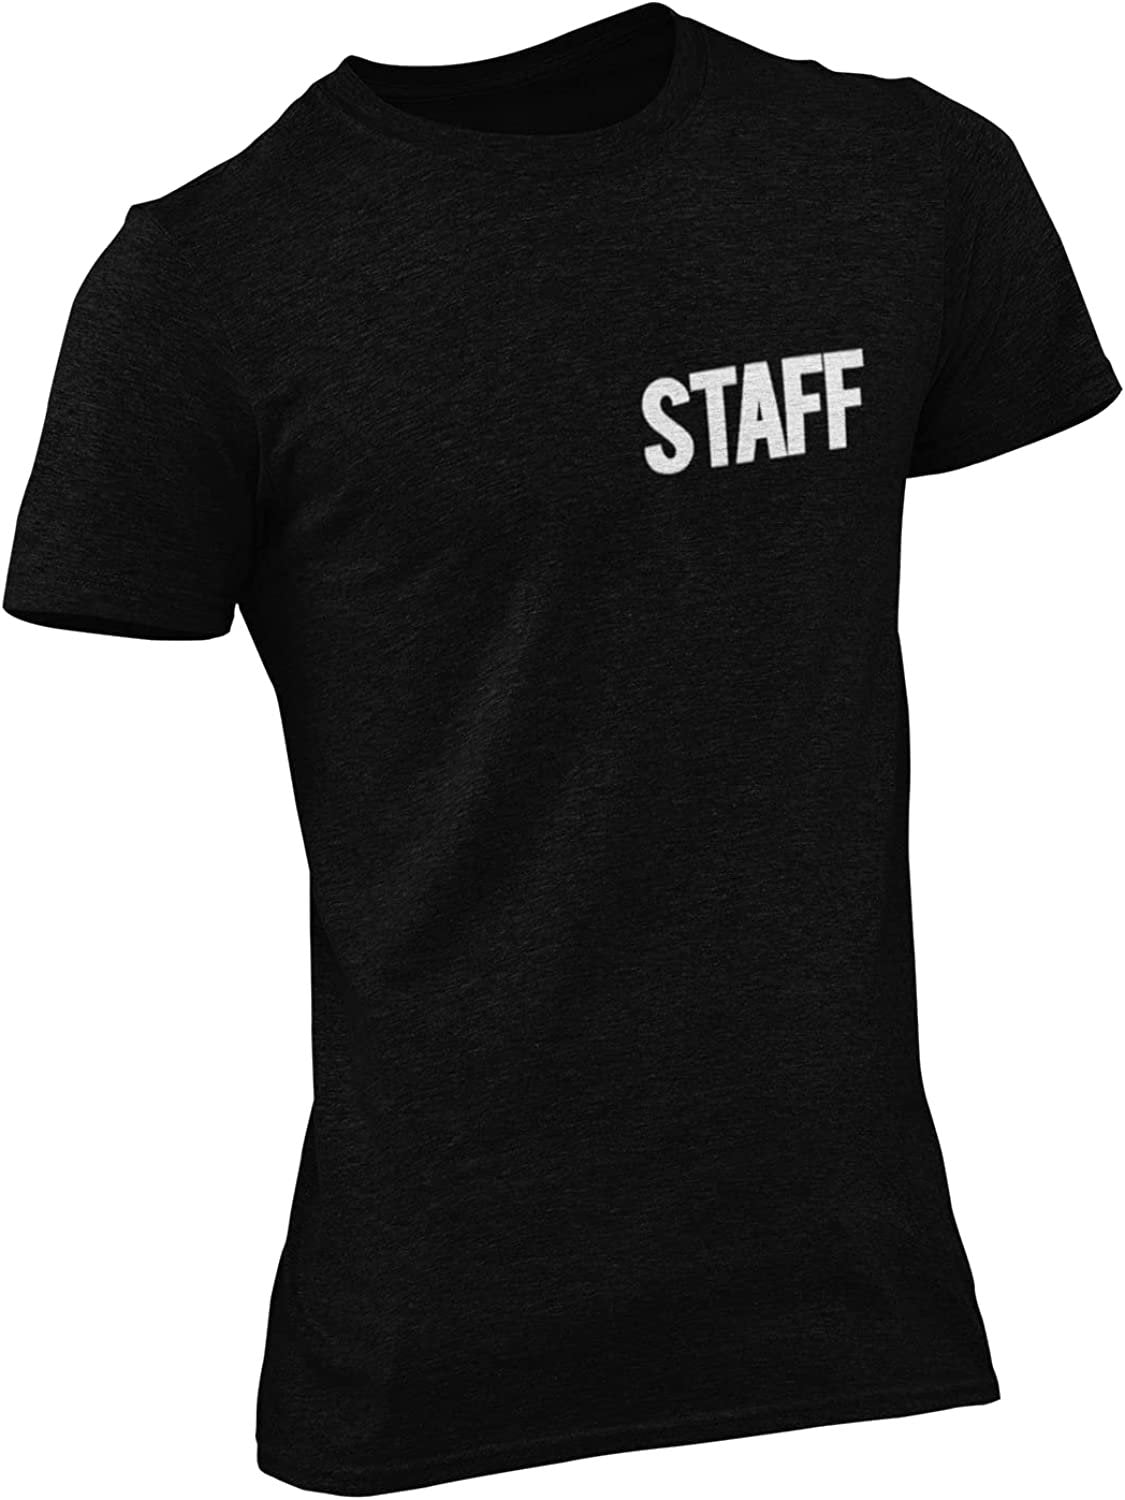 Herren-T-Shirt mit Siebdruck-T-Shirt (Brust- und Rückendruck, Schwarz und Weiß)